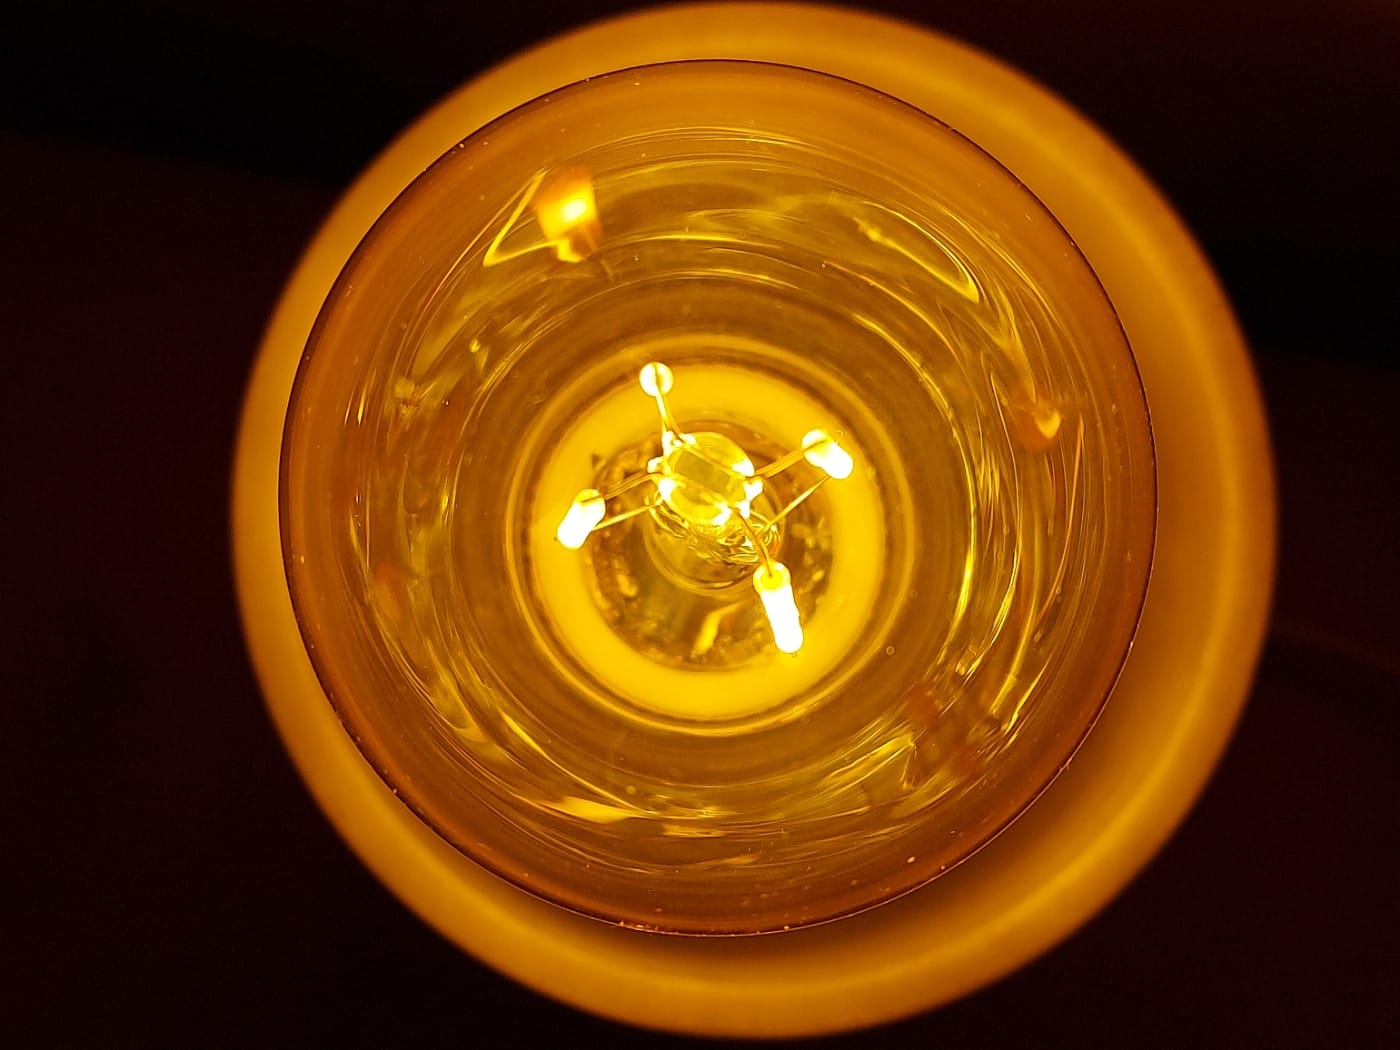 Test Innr Smart Filament Bulb : des ampoules ZigBee vintages – Les